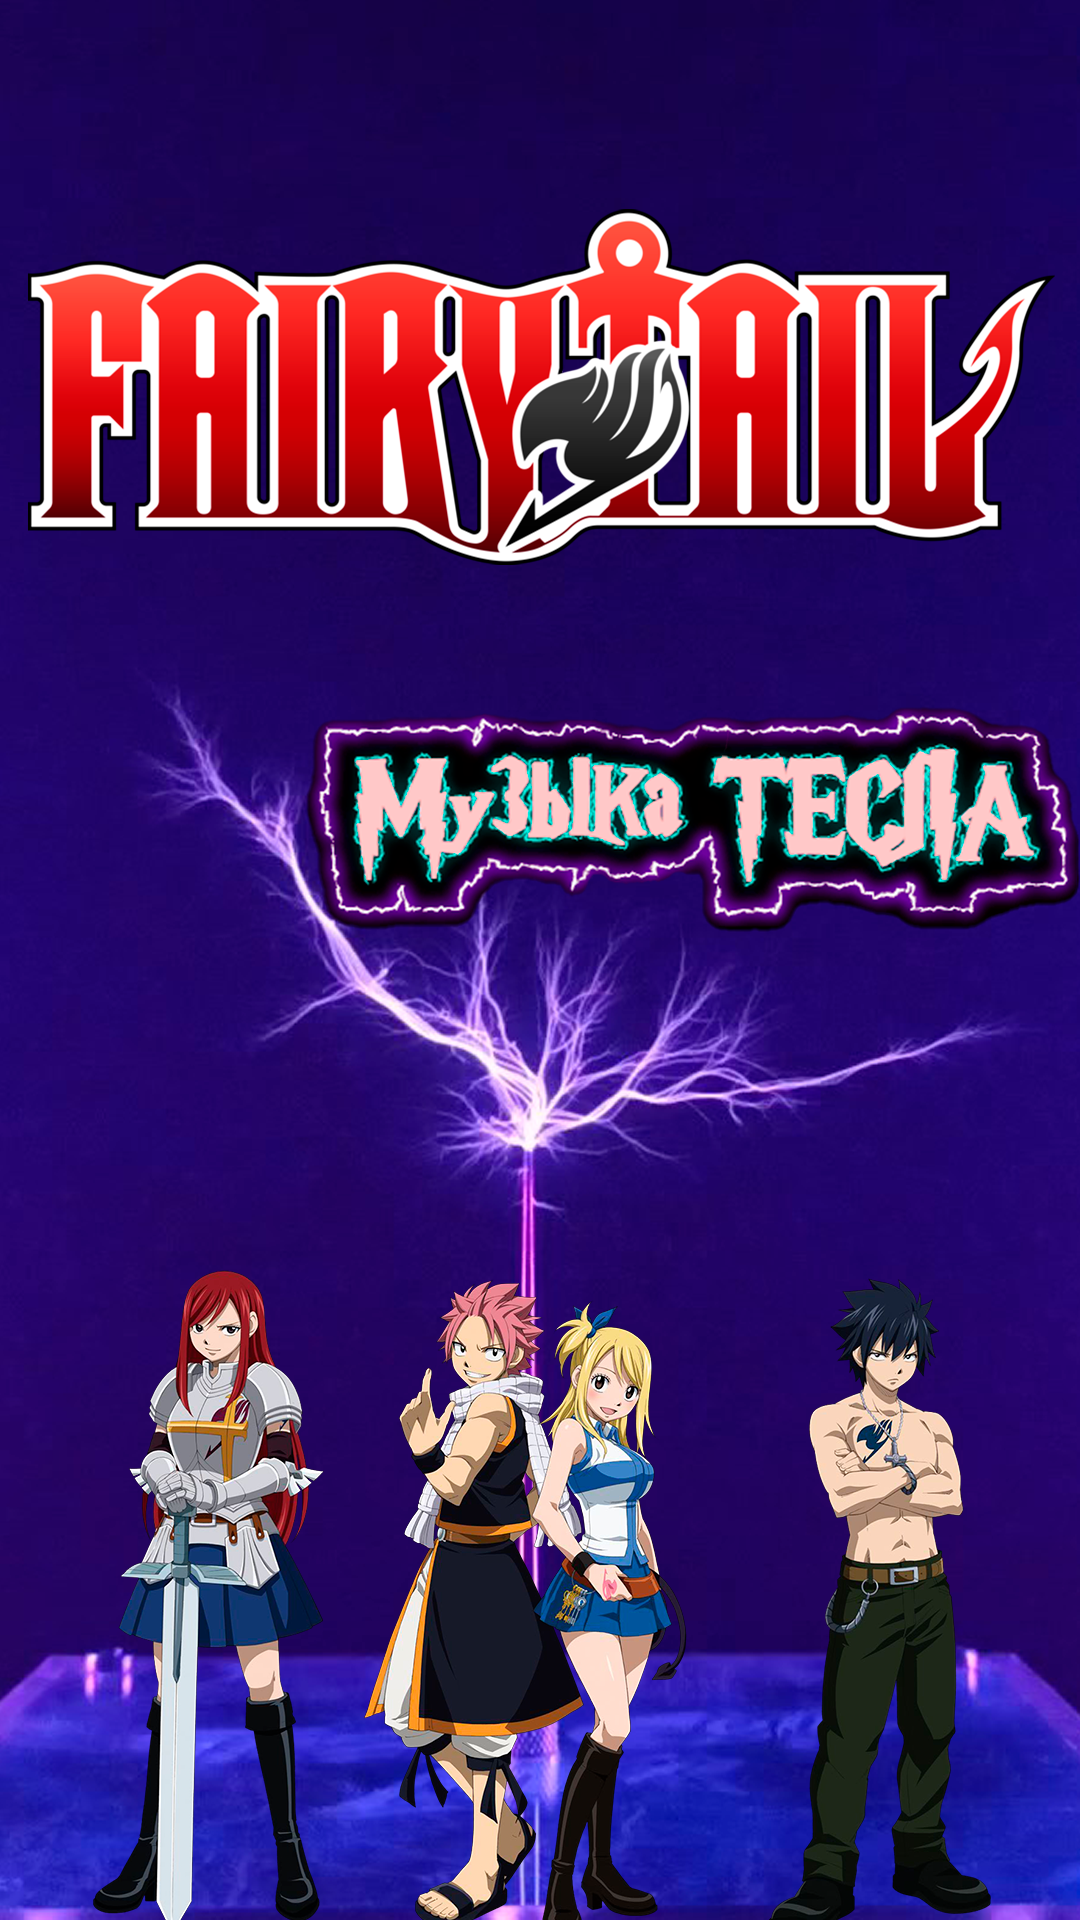 Fairy Tail Main Theme Tesla Coil Mix #музыкатесла